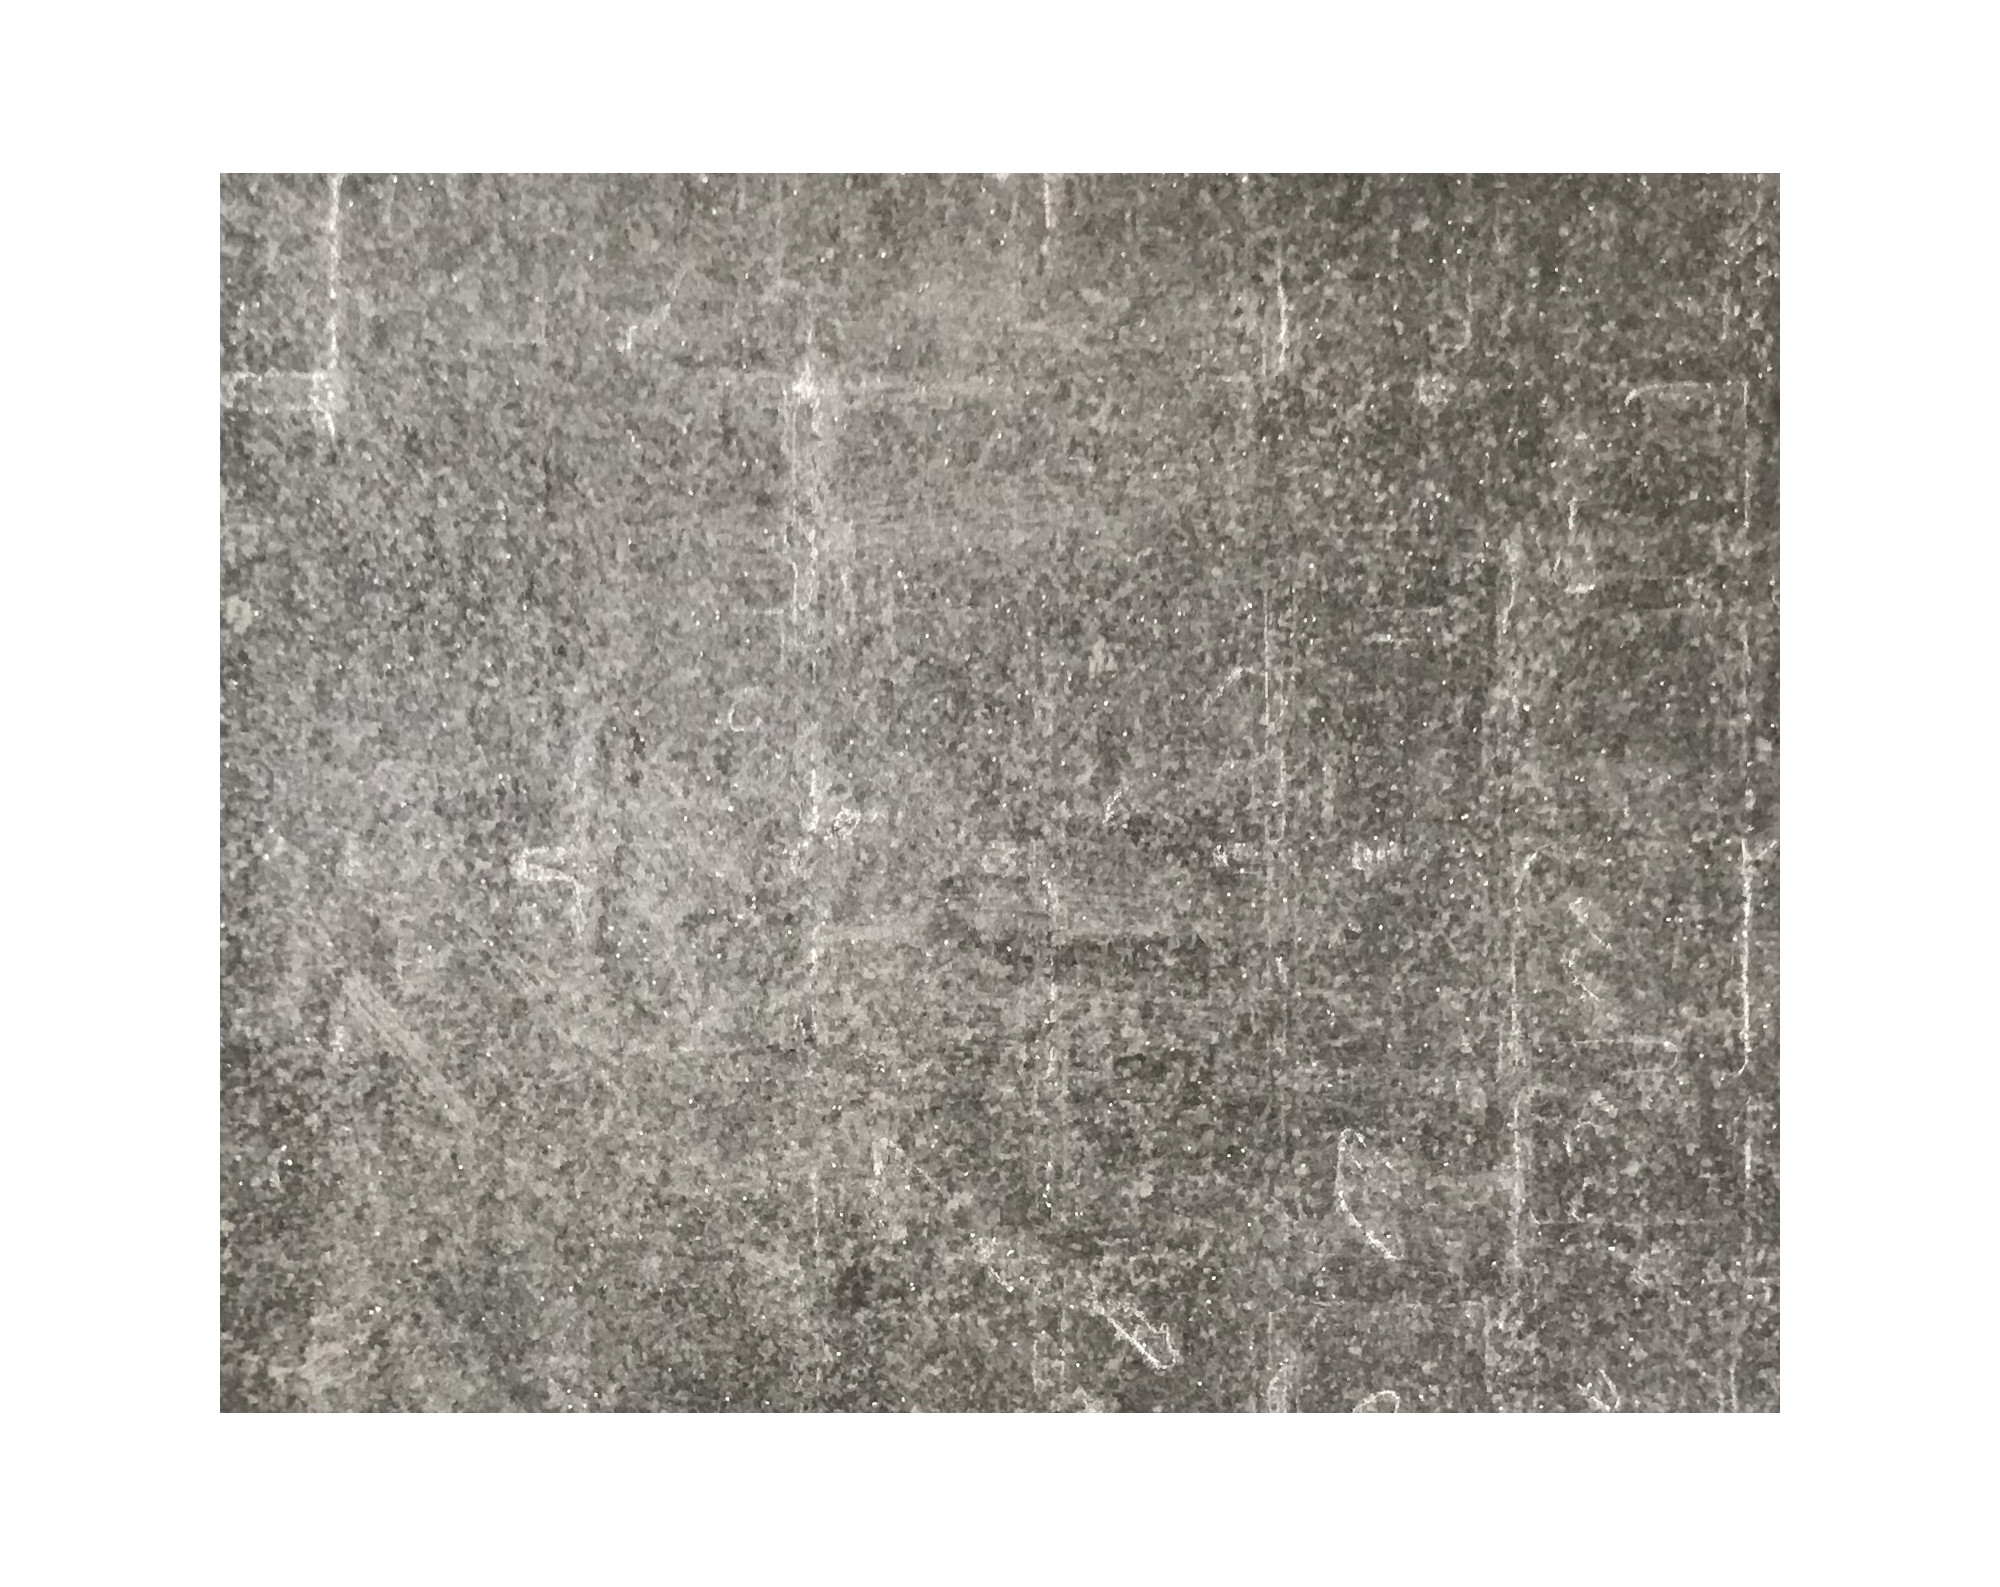 Harmo roc firenzeset, keramiek-serie, 8-vormig d:5,50mx8,55m, zand zwart, keramisch porselein